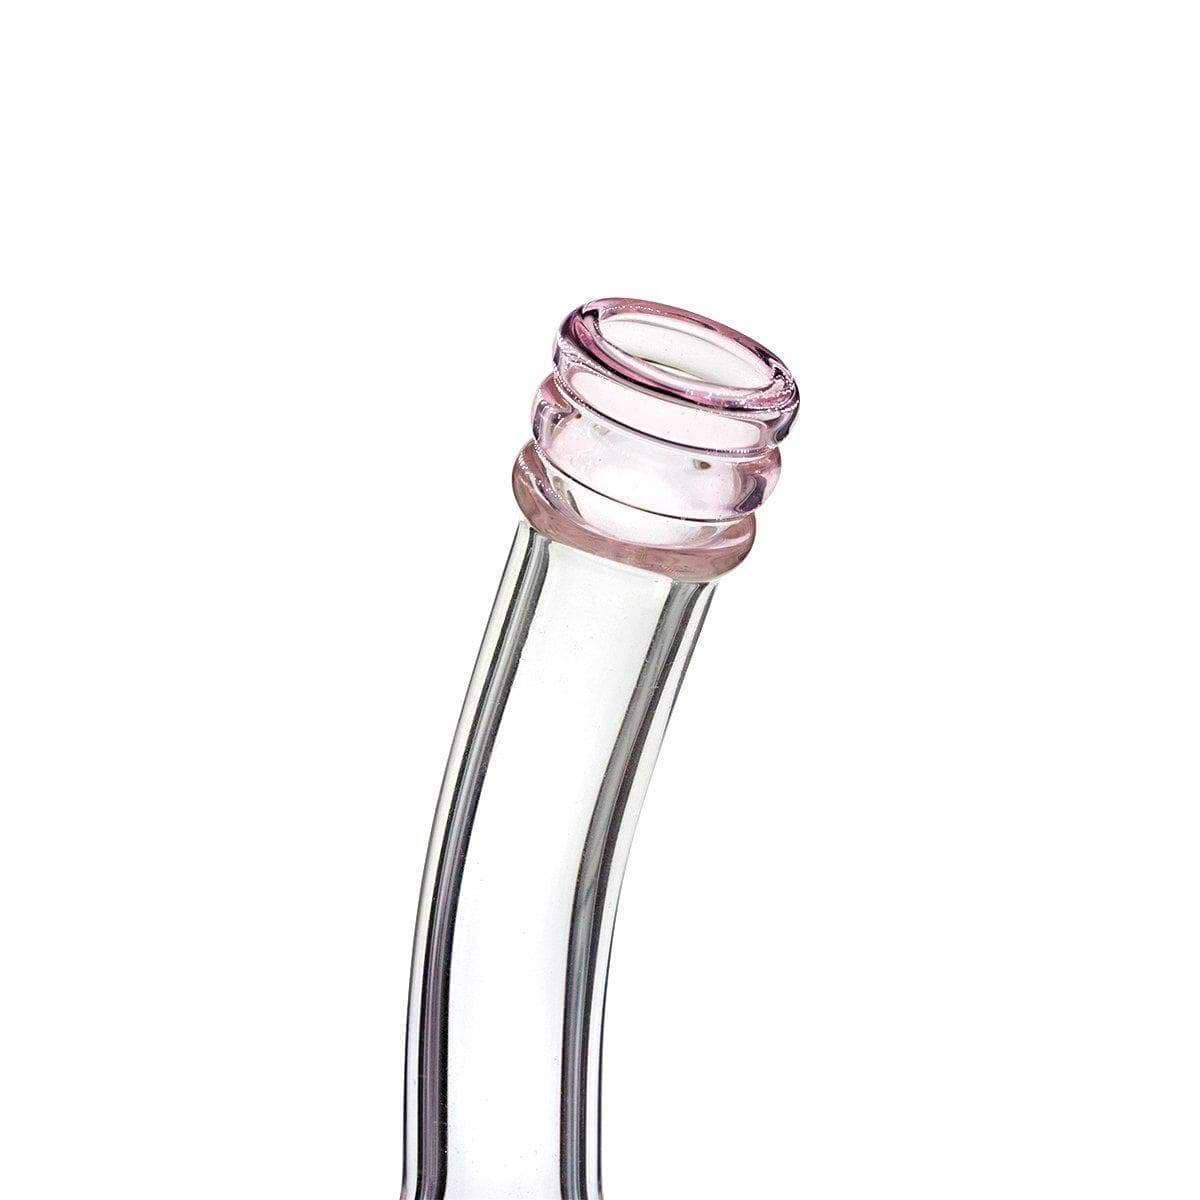 Transparent pink tip of glass bong